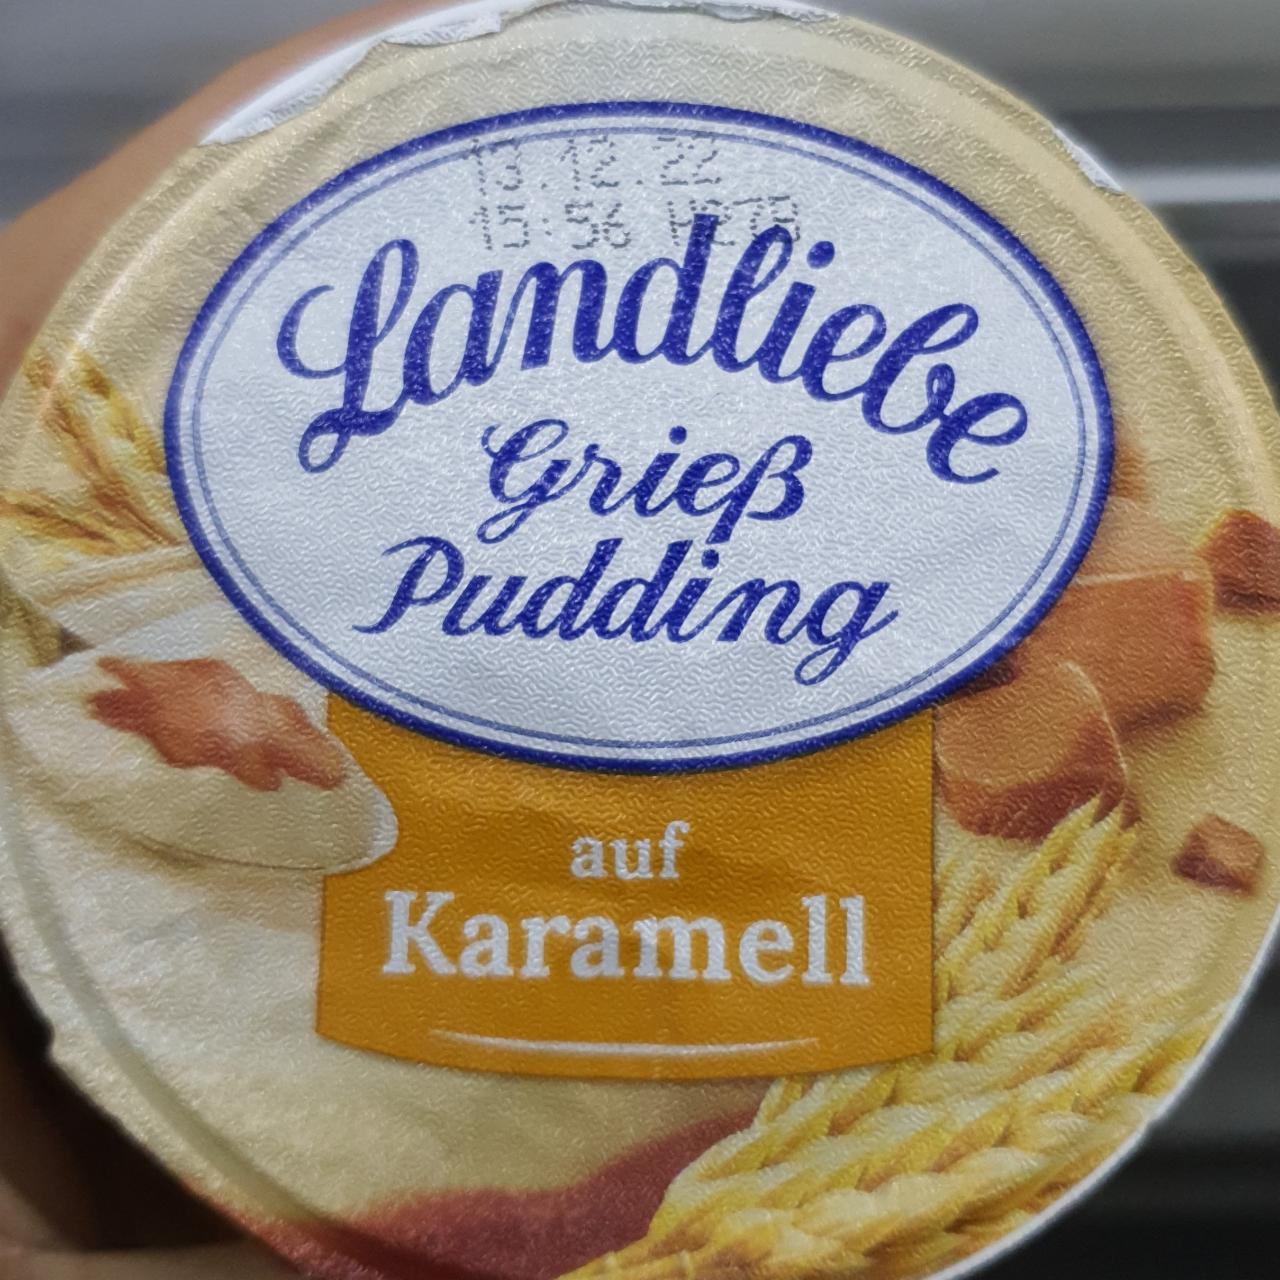 Fotografie - Grieß Pudding Karamell Landliebe